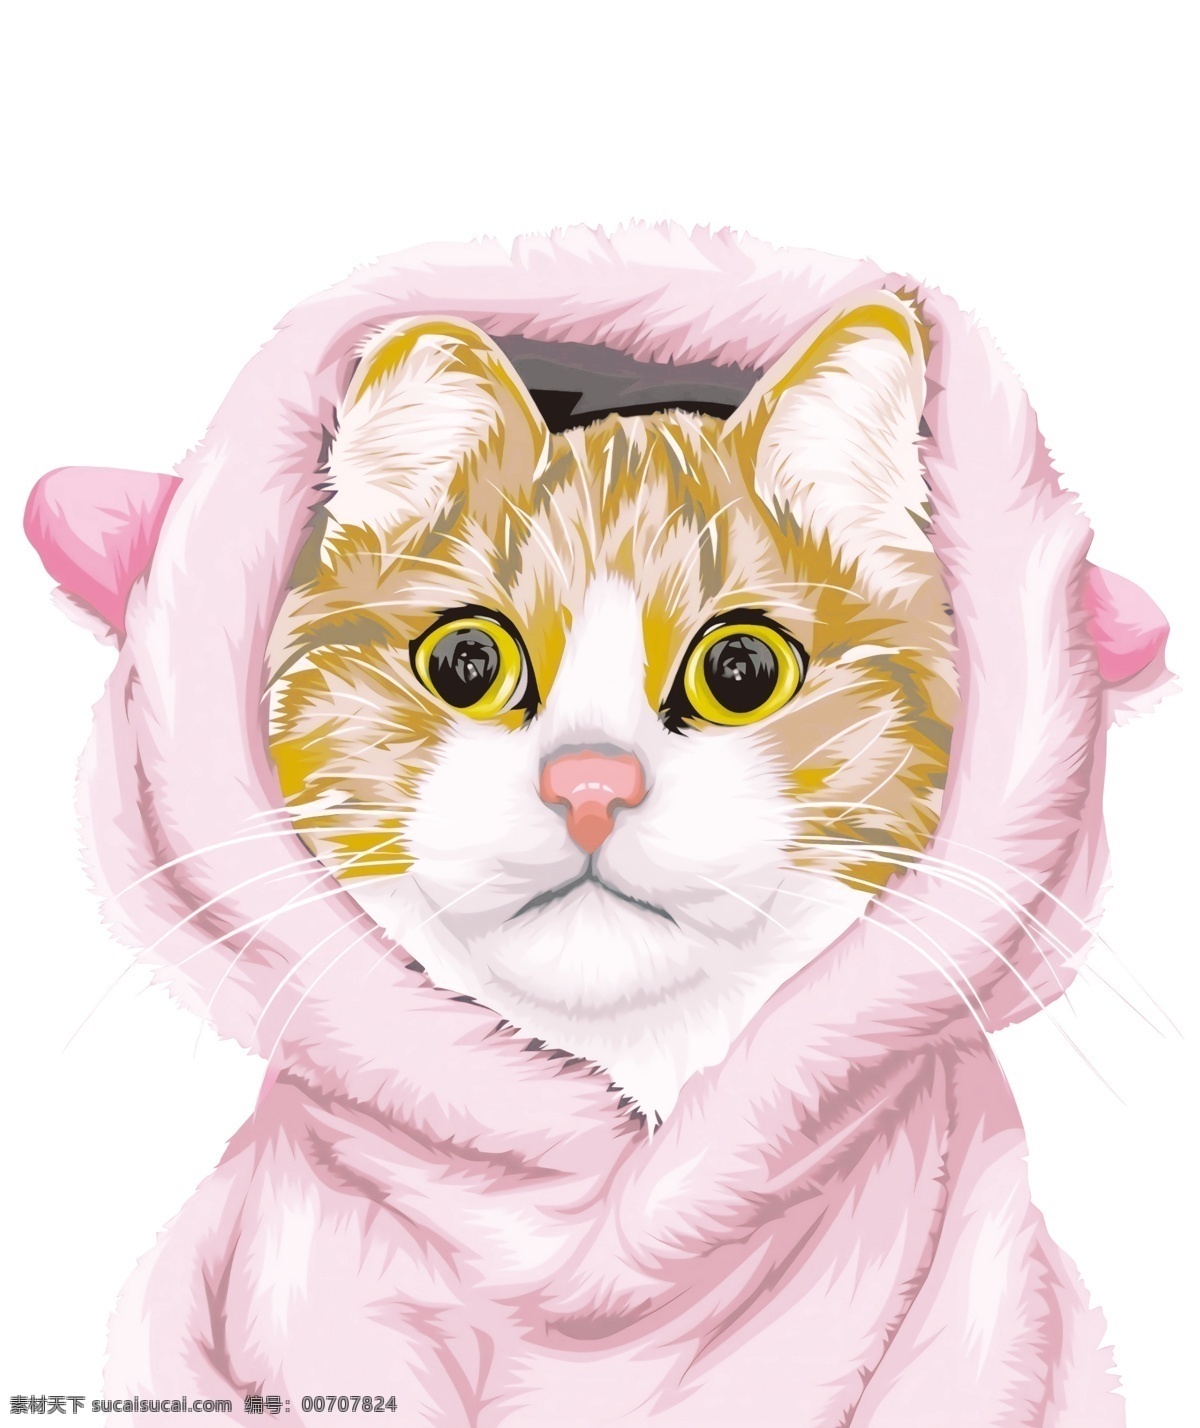 粉帽子猫 粉帽子 猫 插画 图案 印花 服装